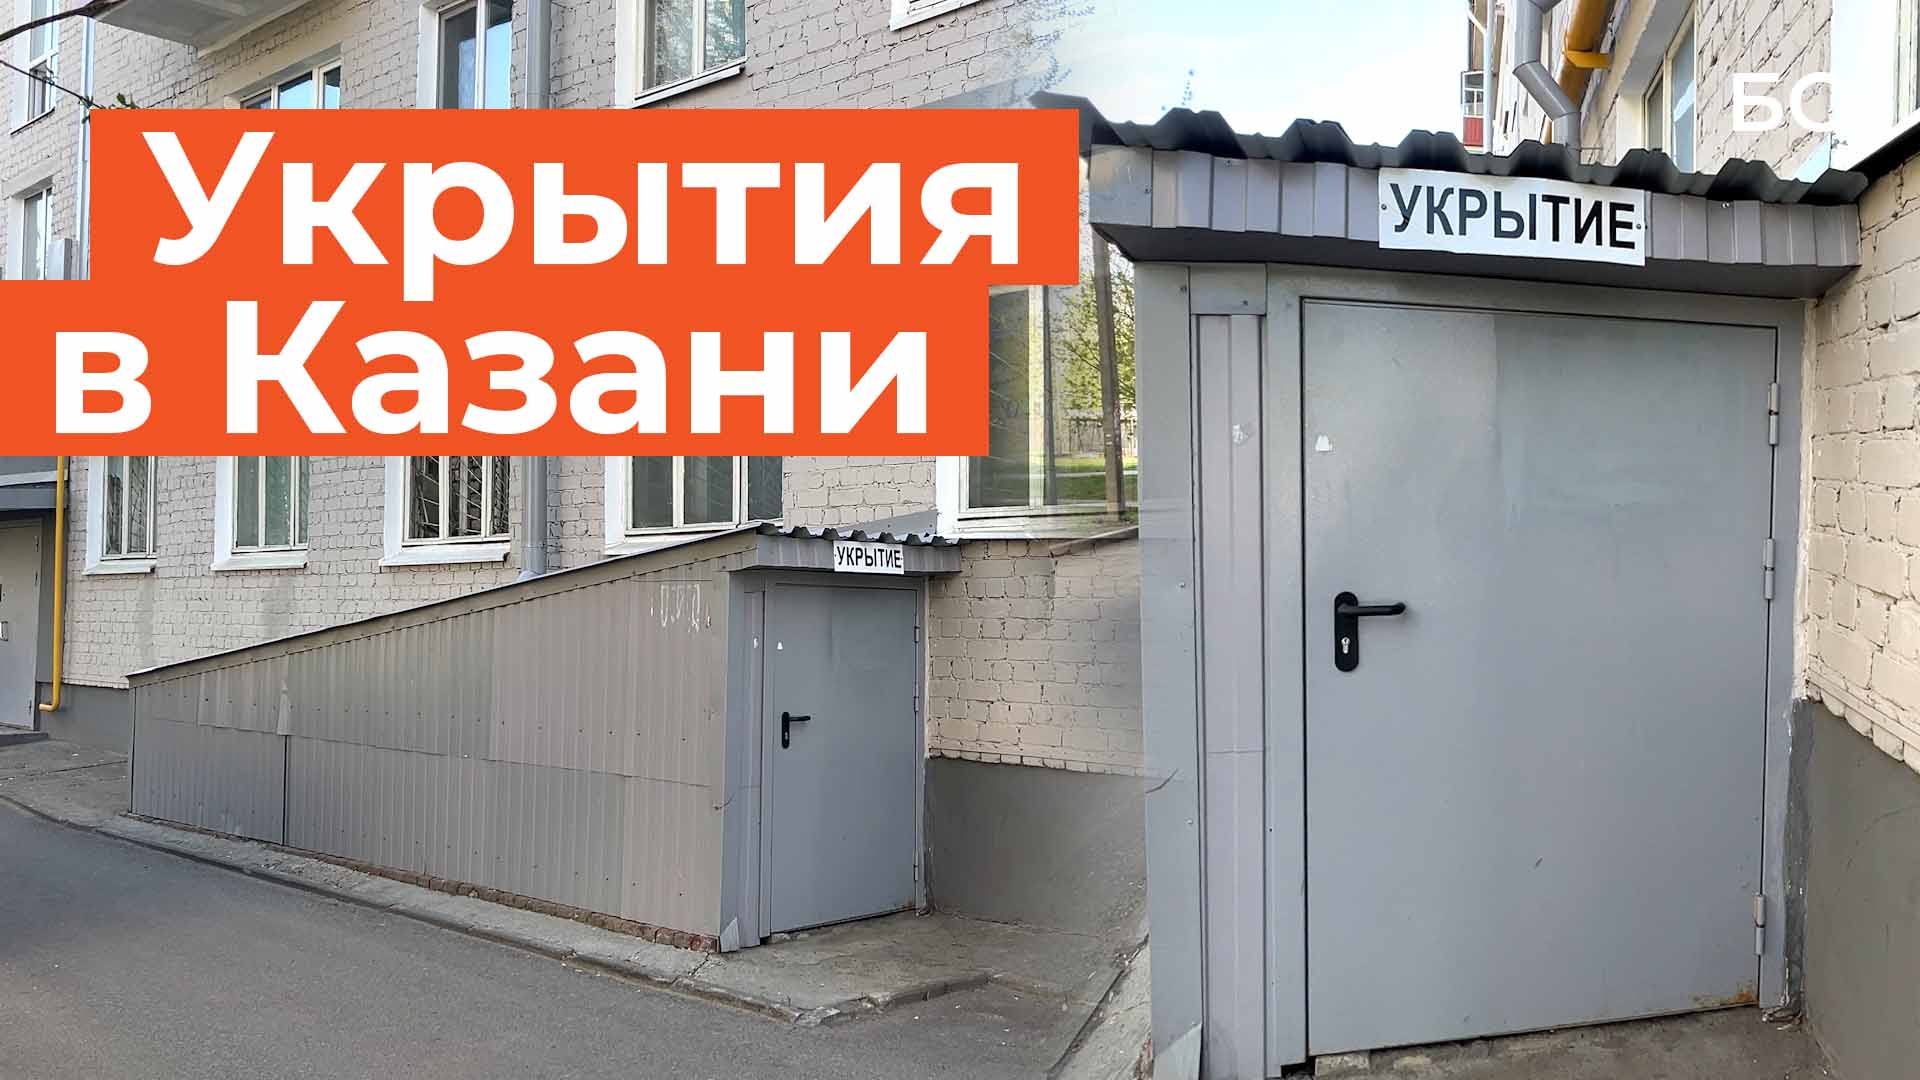 В Казани начали появляться таблички «Укрытие» на дверях подвалов многоквартирных домов